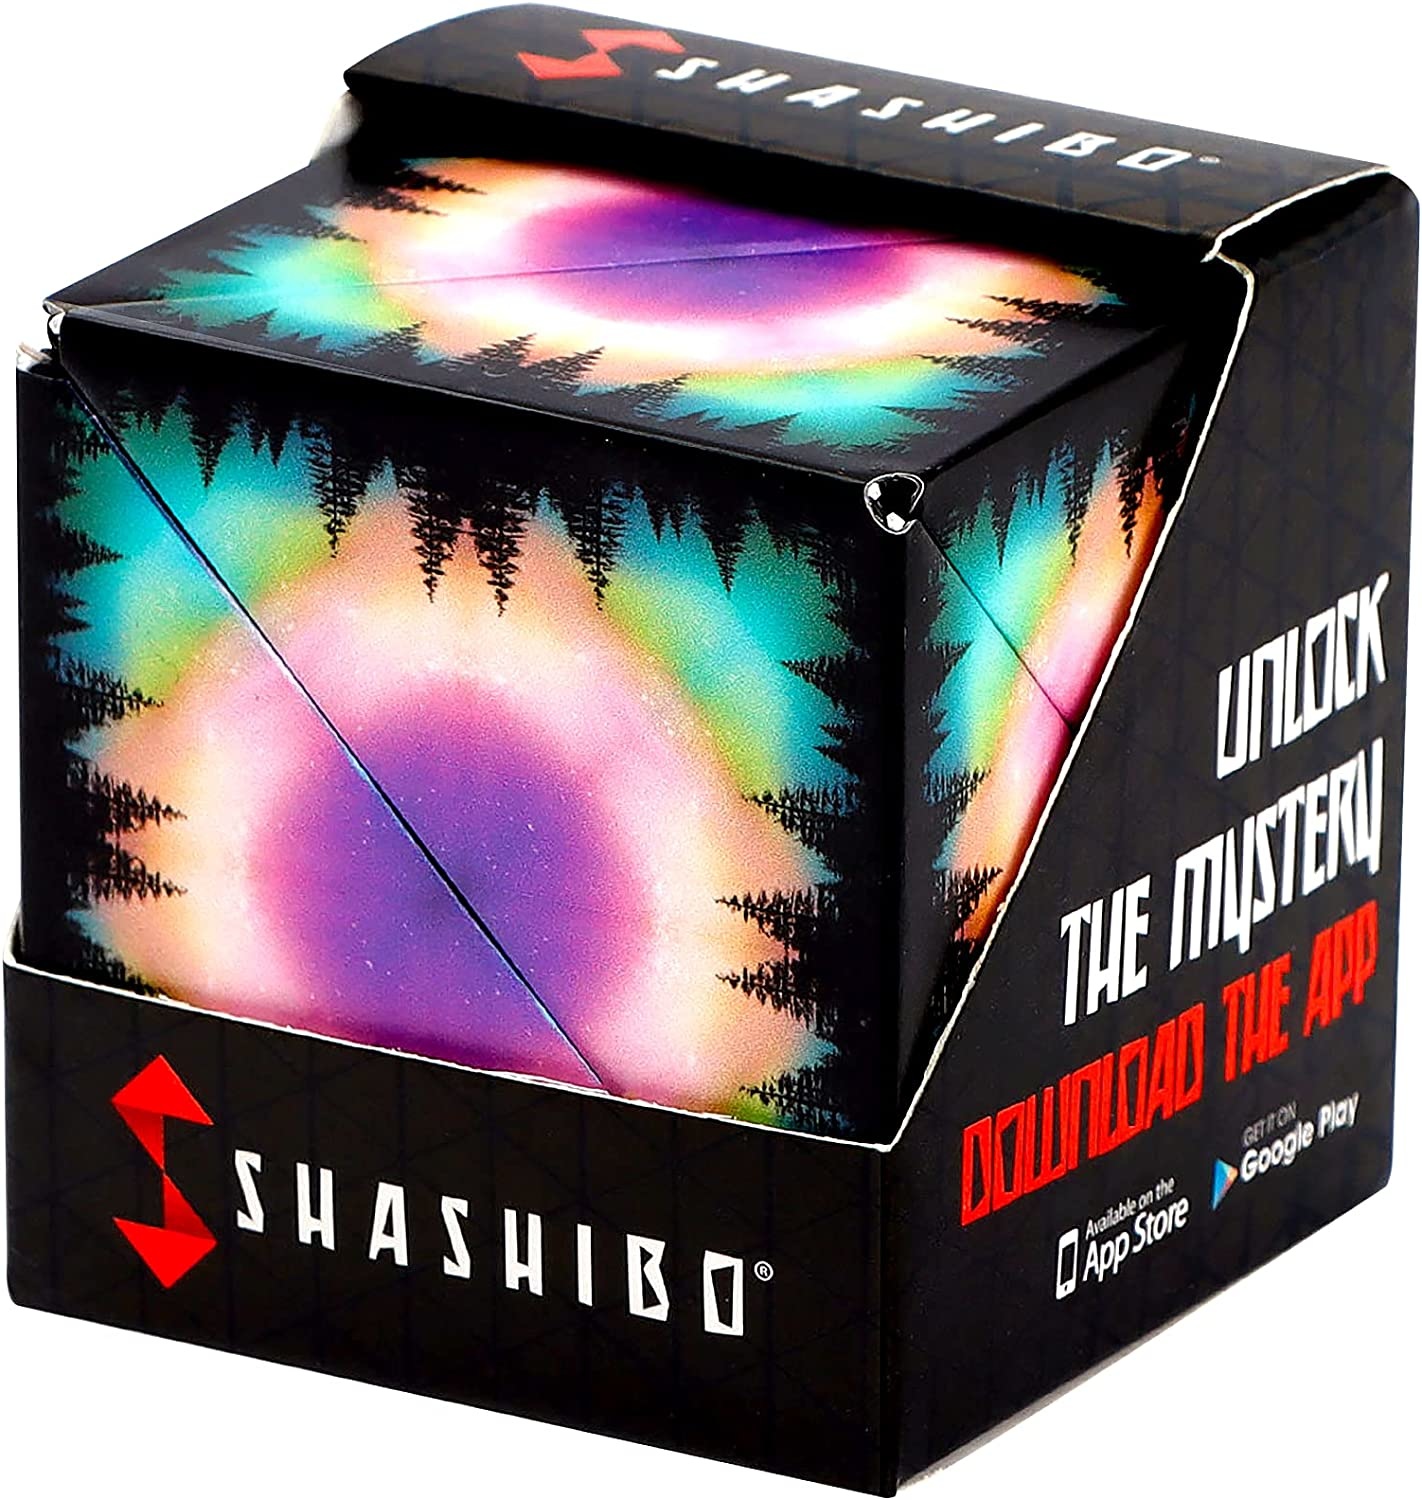 Shashibo Cube On Sale